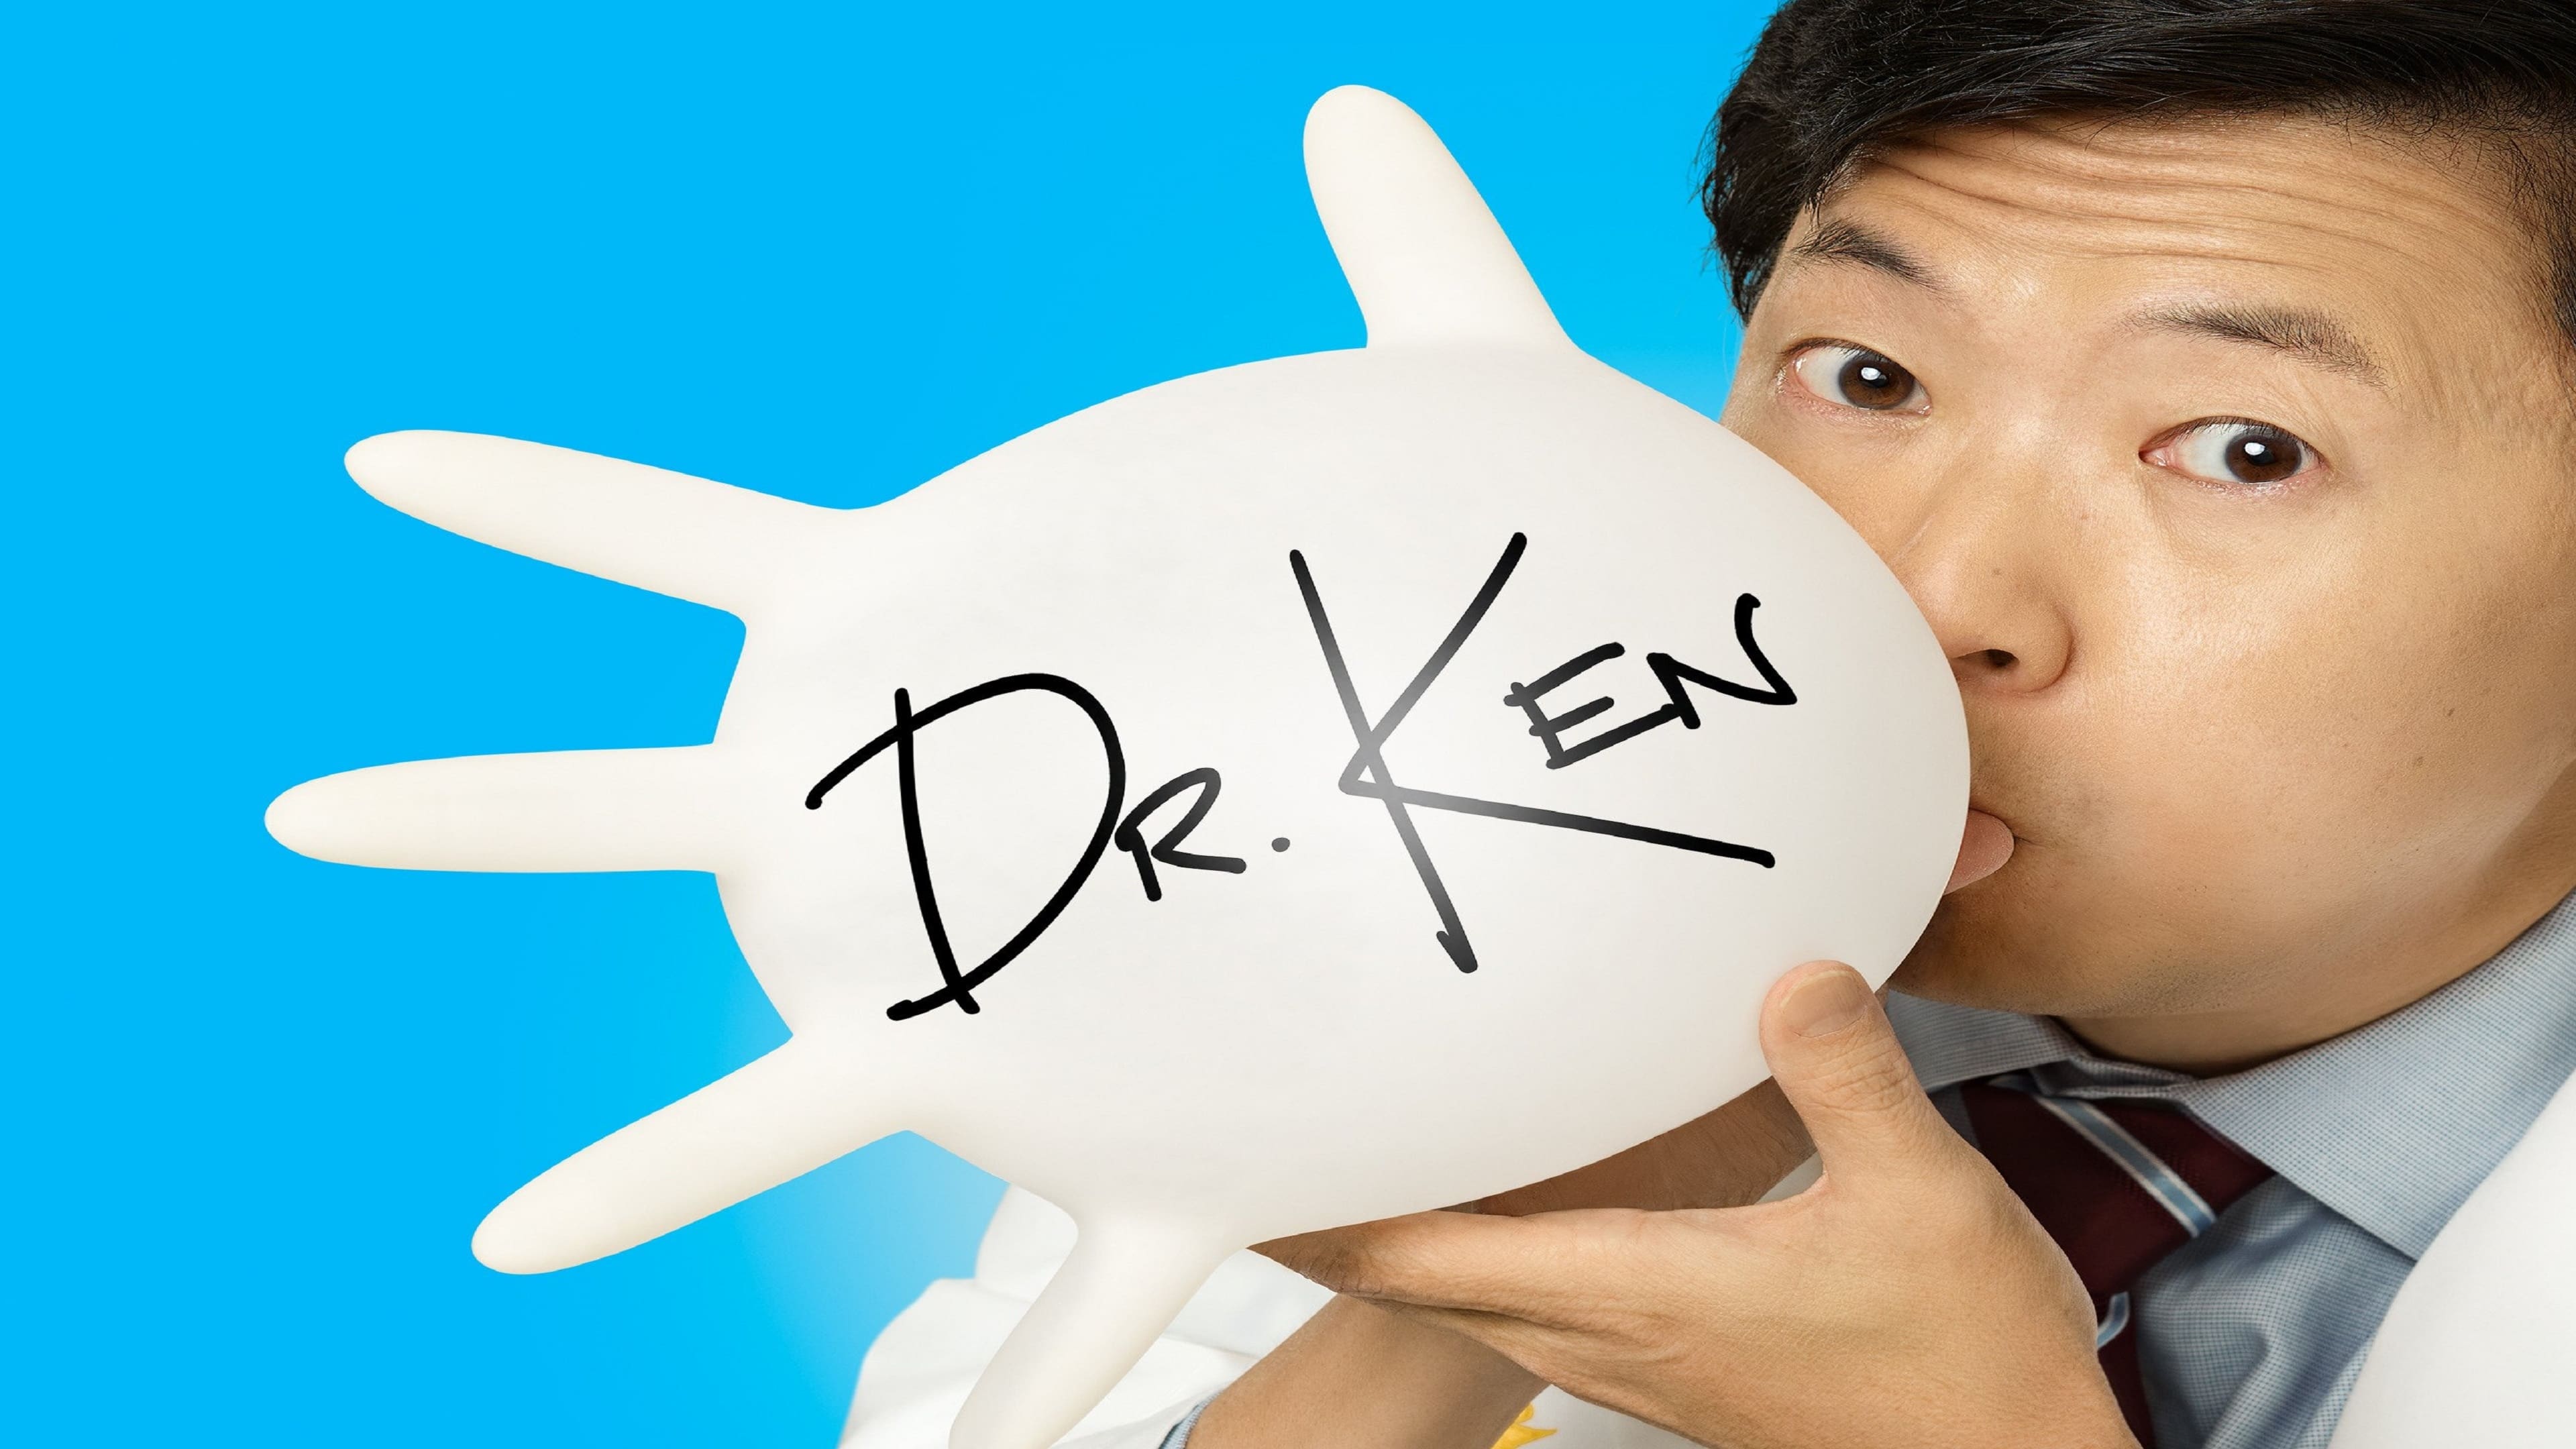 Dr. Ken list of episodes